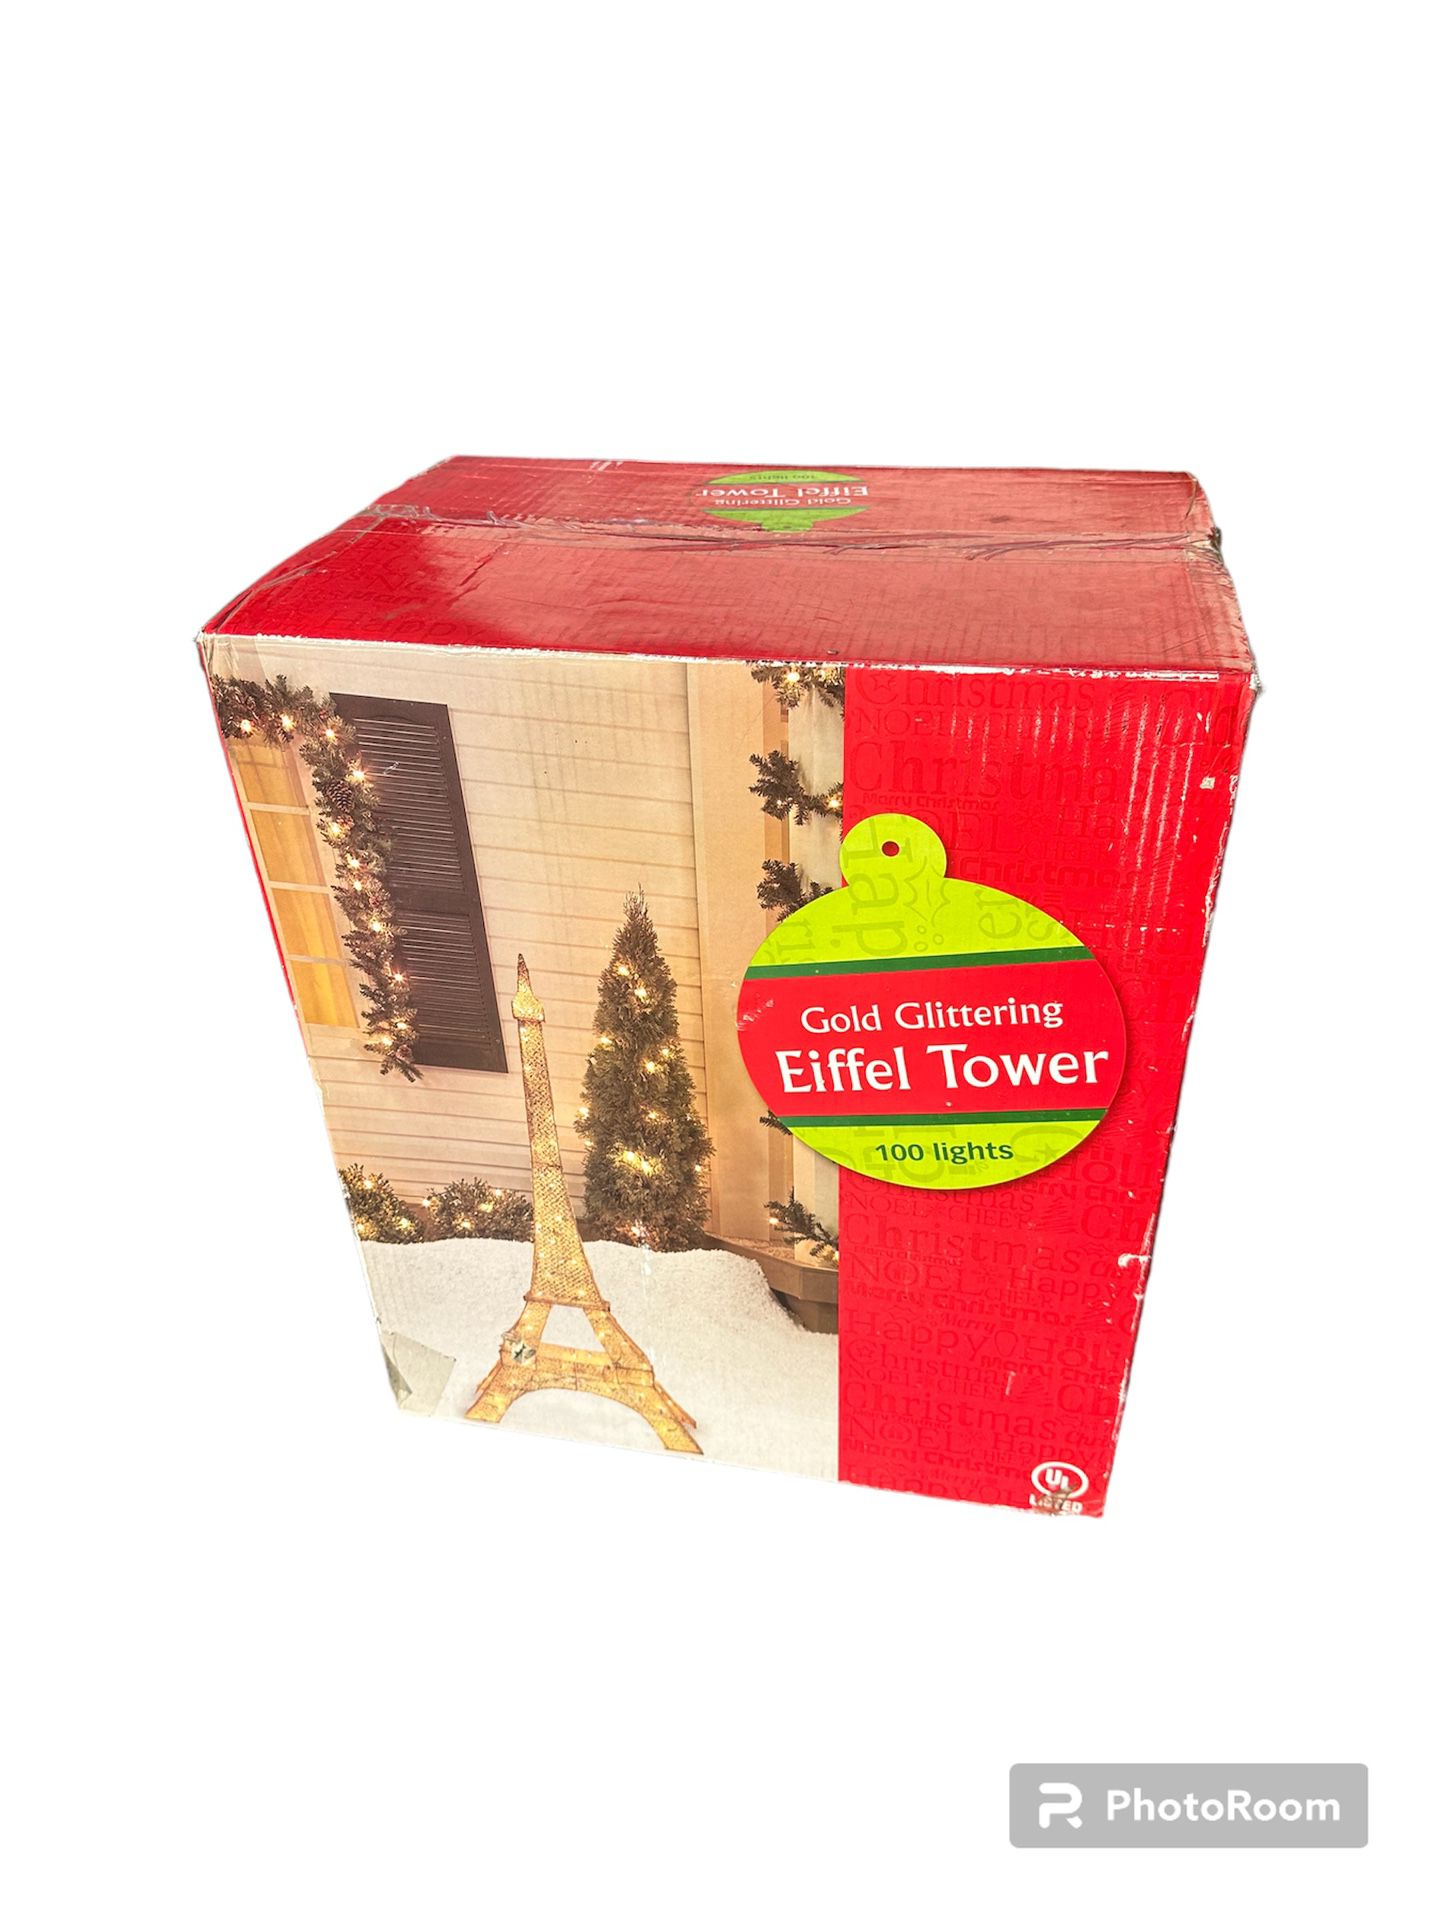 Gold Glittering Eiffel Tower 100 Miniature Twinkling Lights 60” Tall Yard Decor